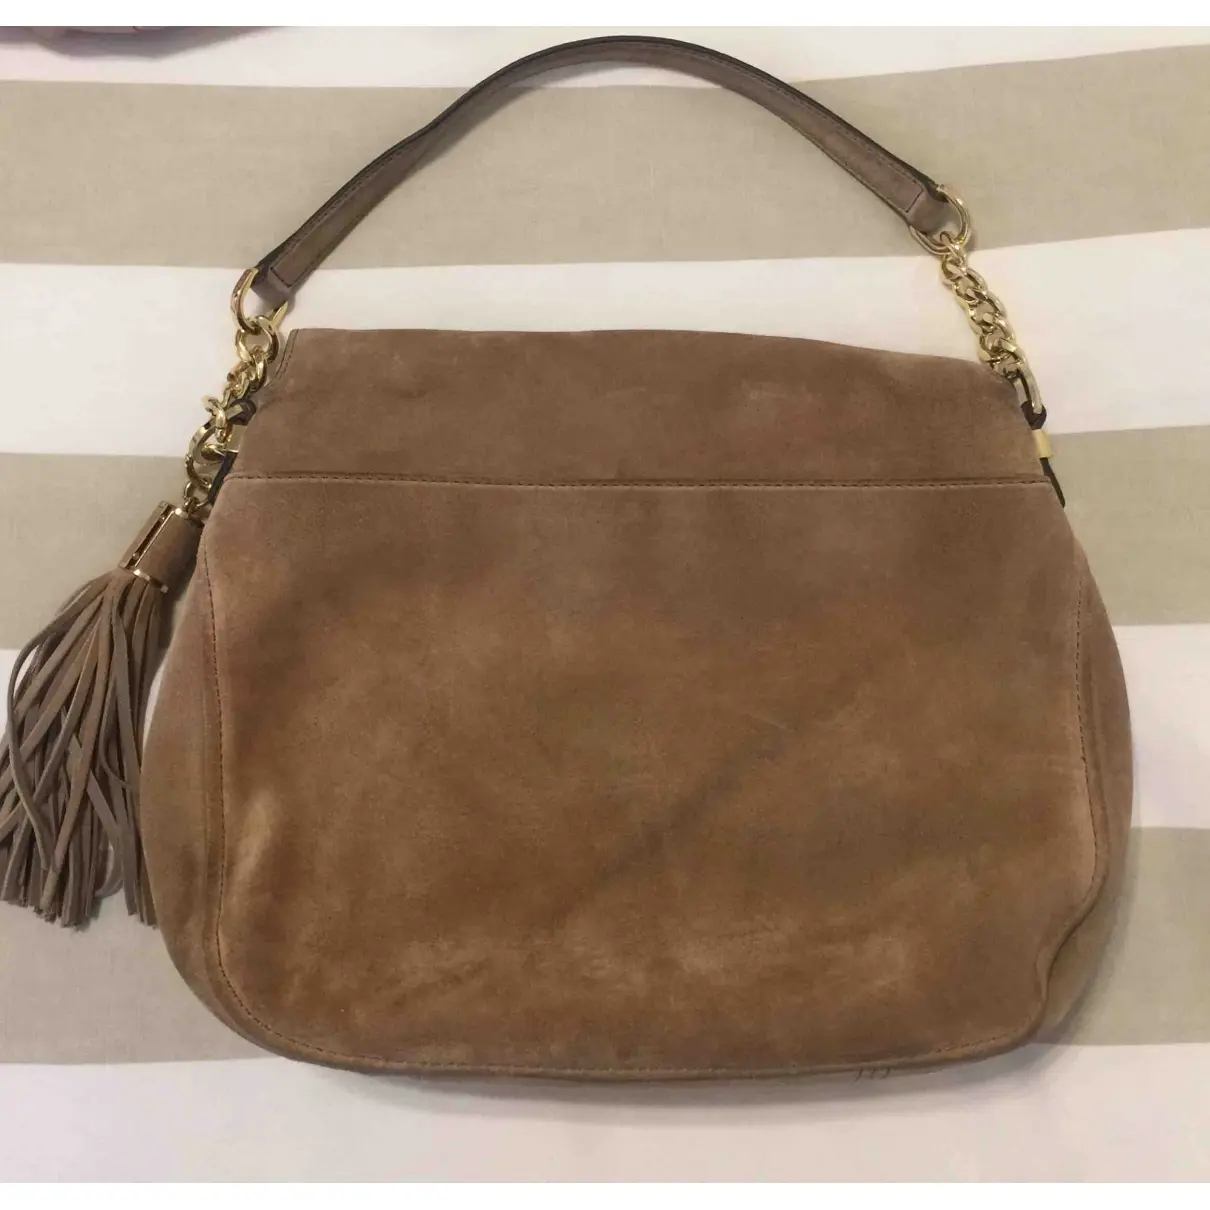 Buy Michael Kors Ava handbag online